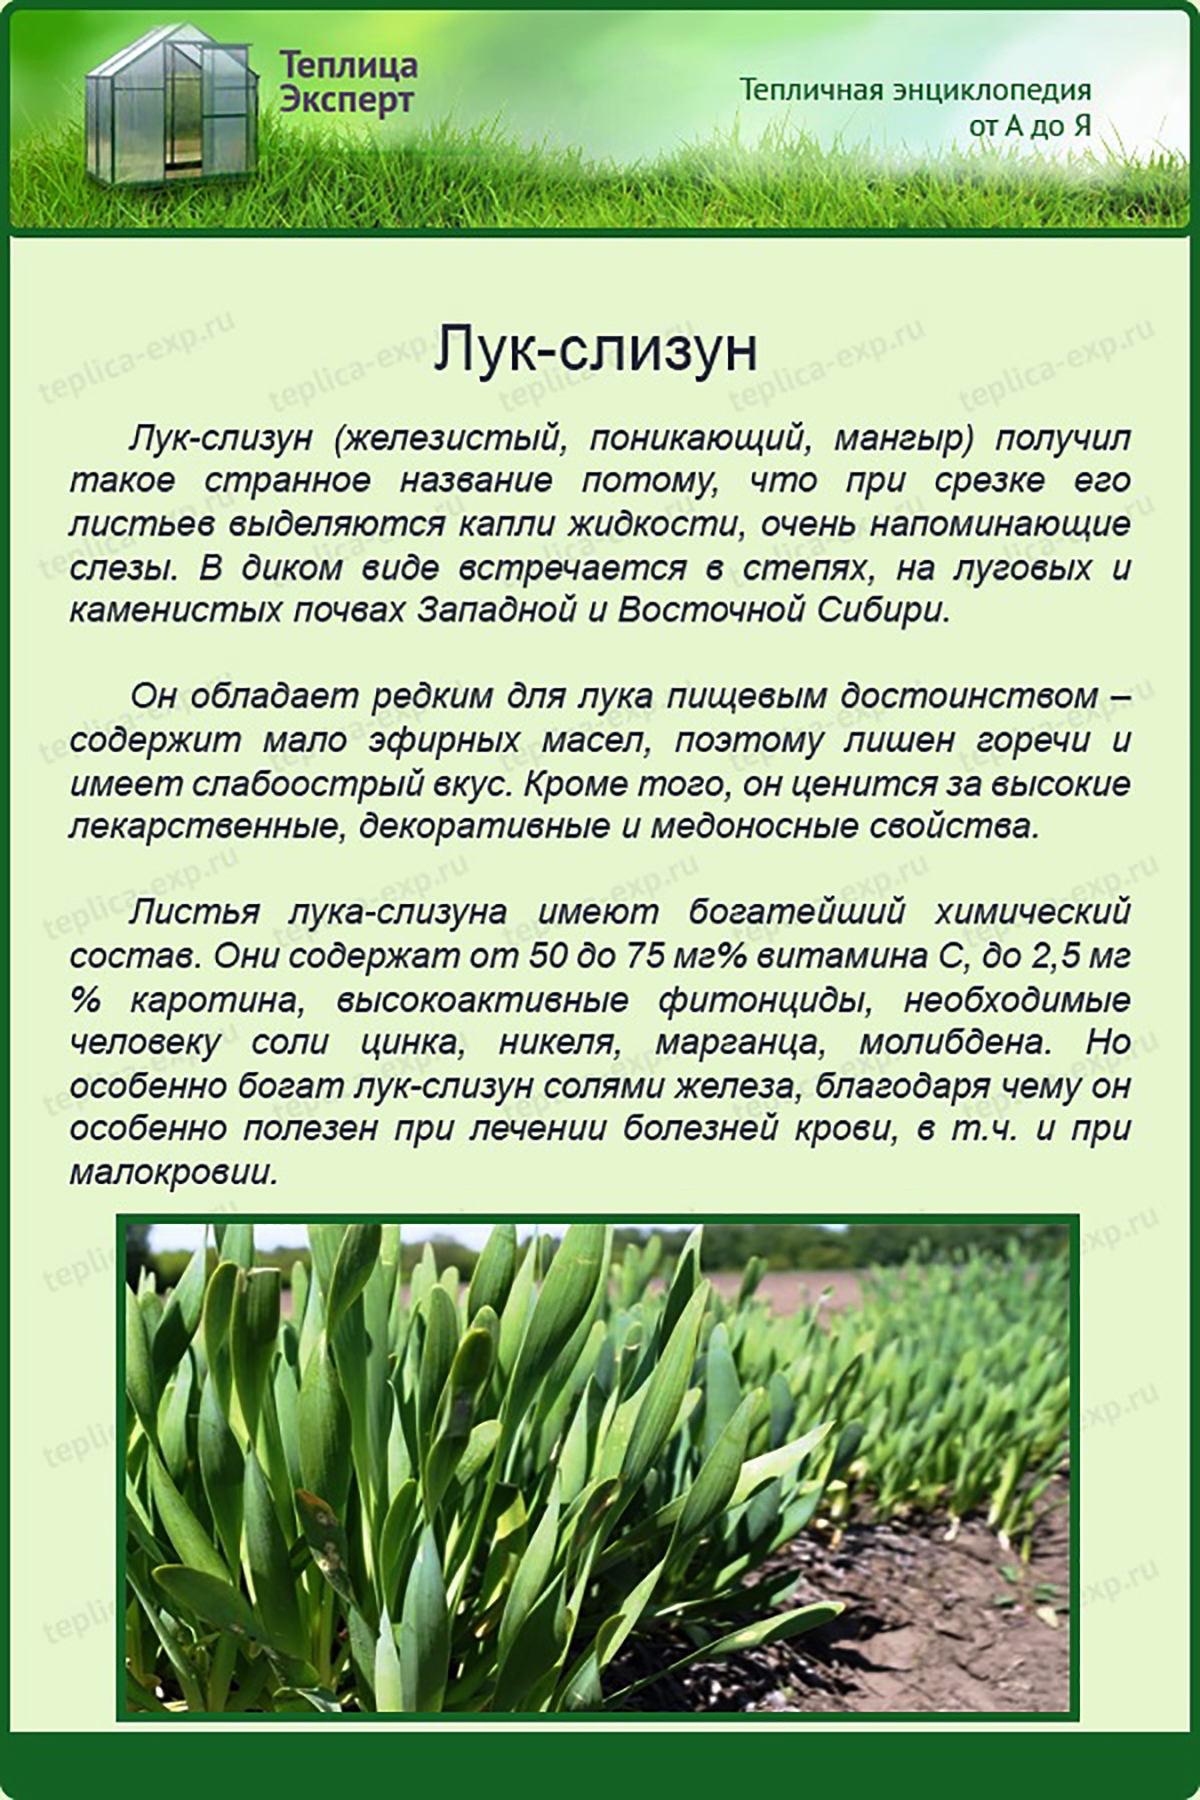 Агротехнические секреты выращивания лука-слизуна